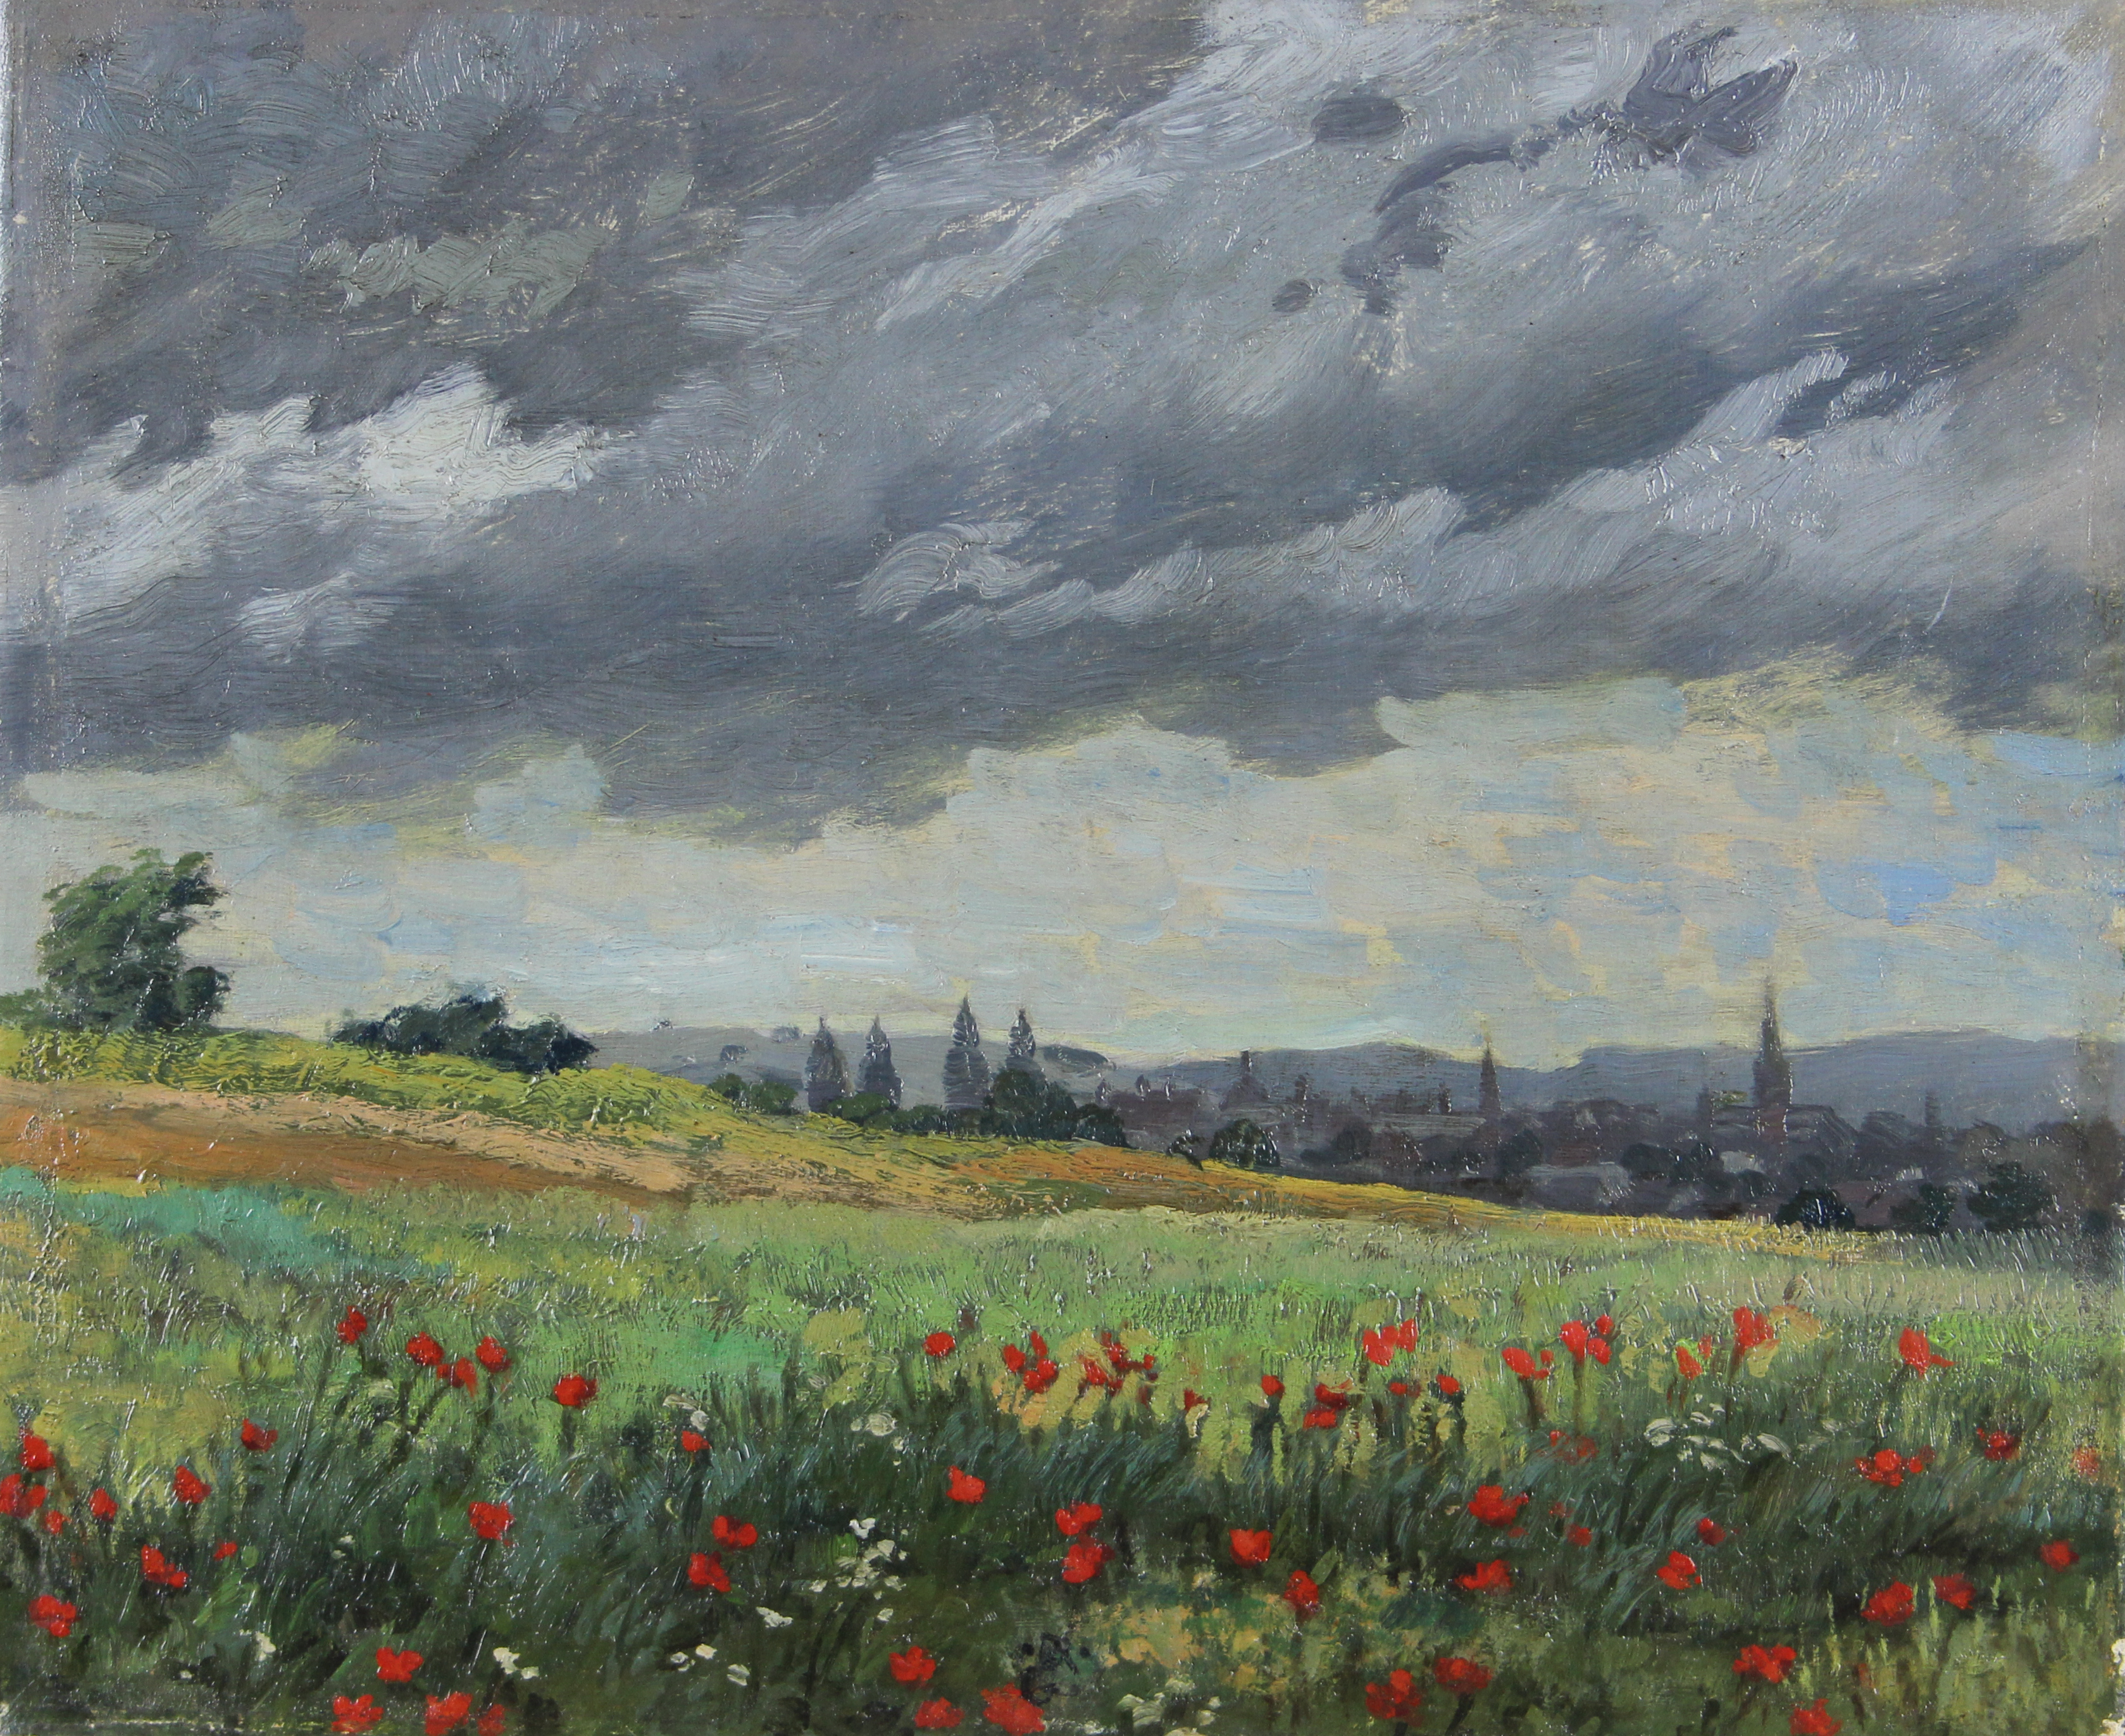 tableau Fleures des champs   fleurs,paysage,village impressionnisme huile toile 1re moiti 20e sicle